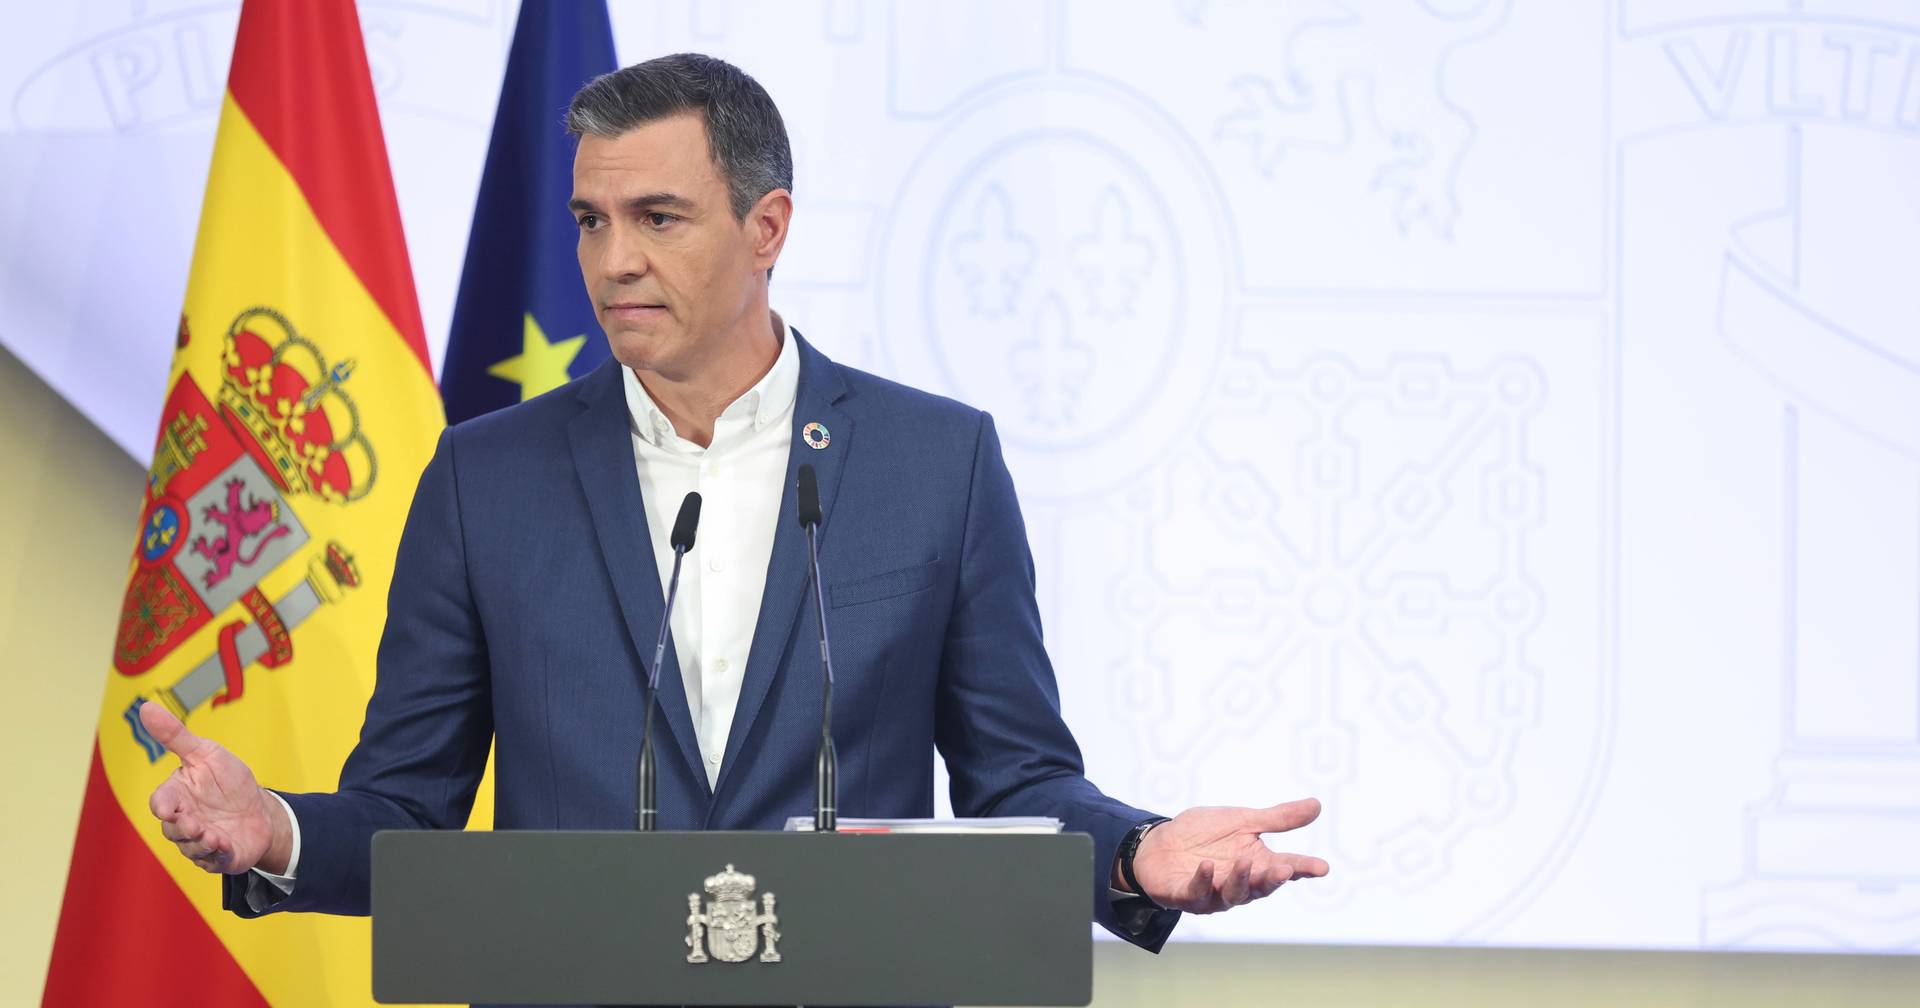 Pedro Sánchez candidata-se a presidente da Internacional Socialista